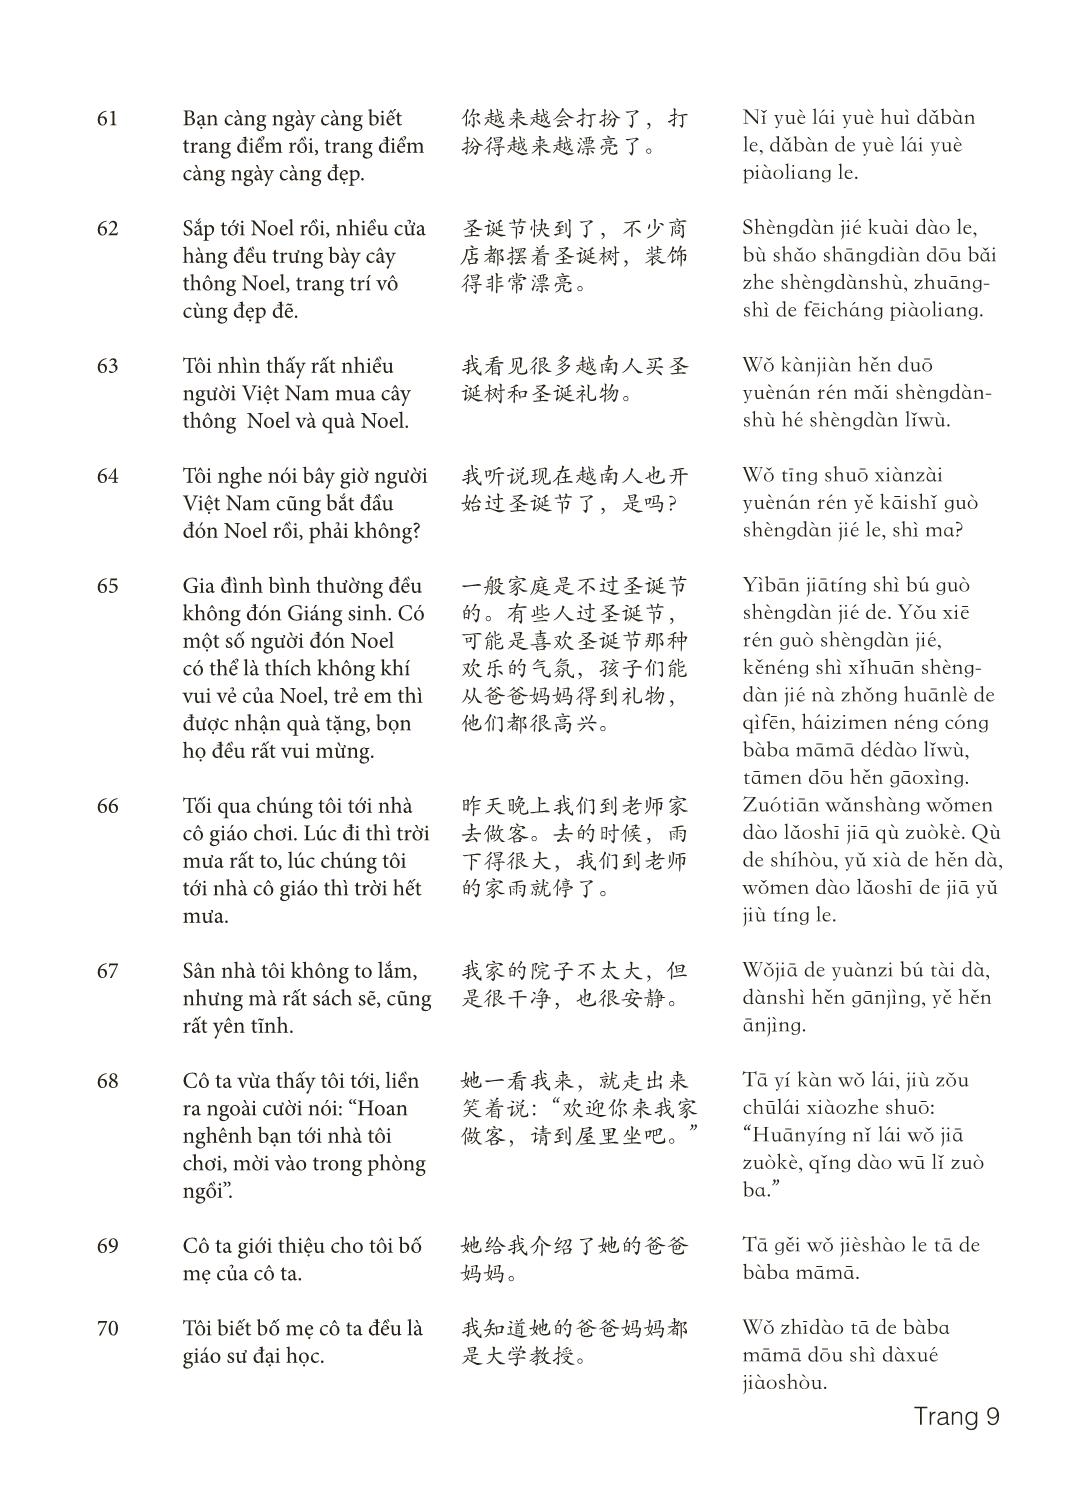 3000 Câu đàm thoại tiếng Hoa - Phần 20 trang 9